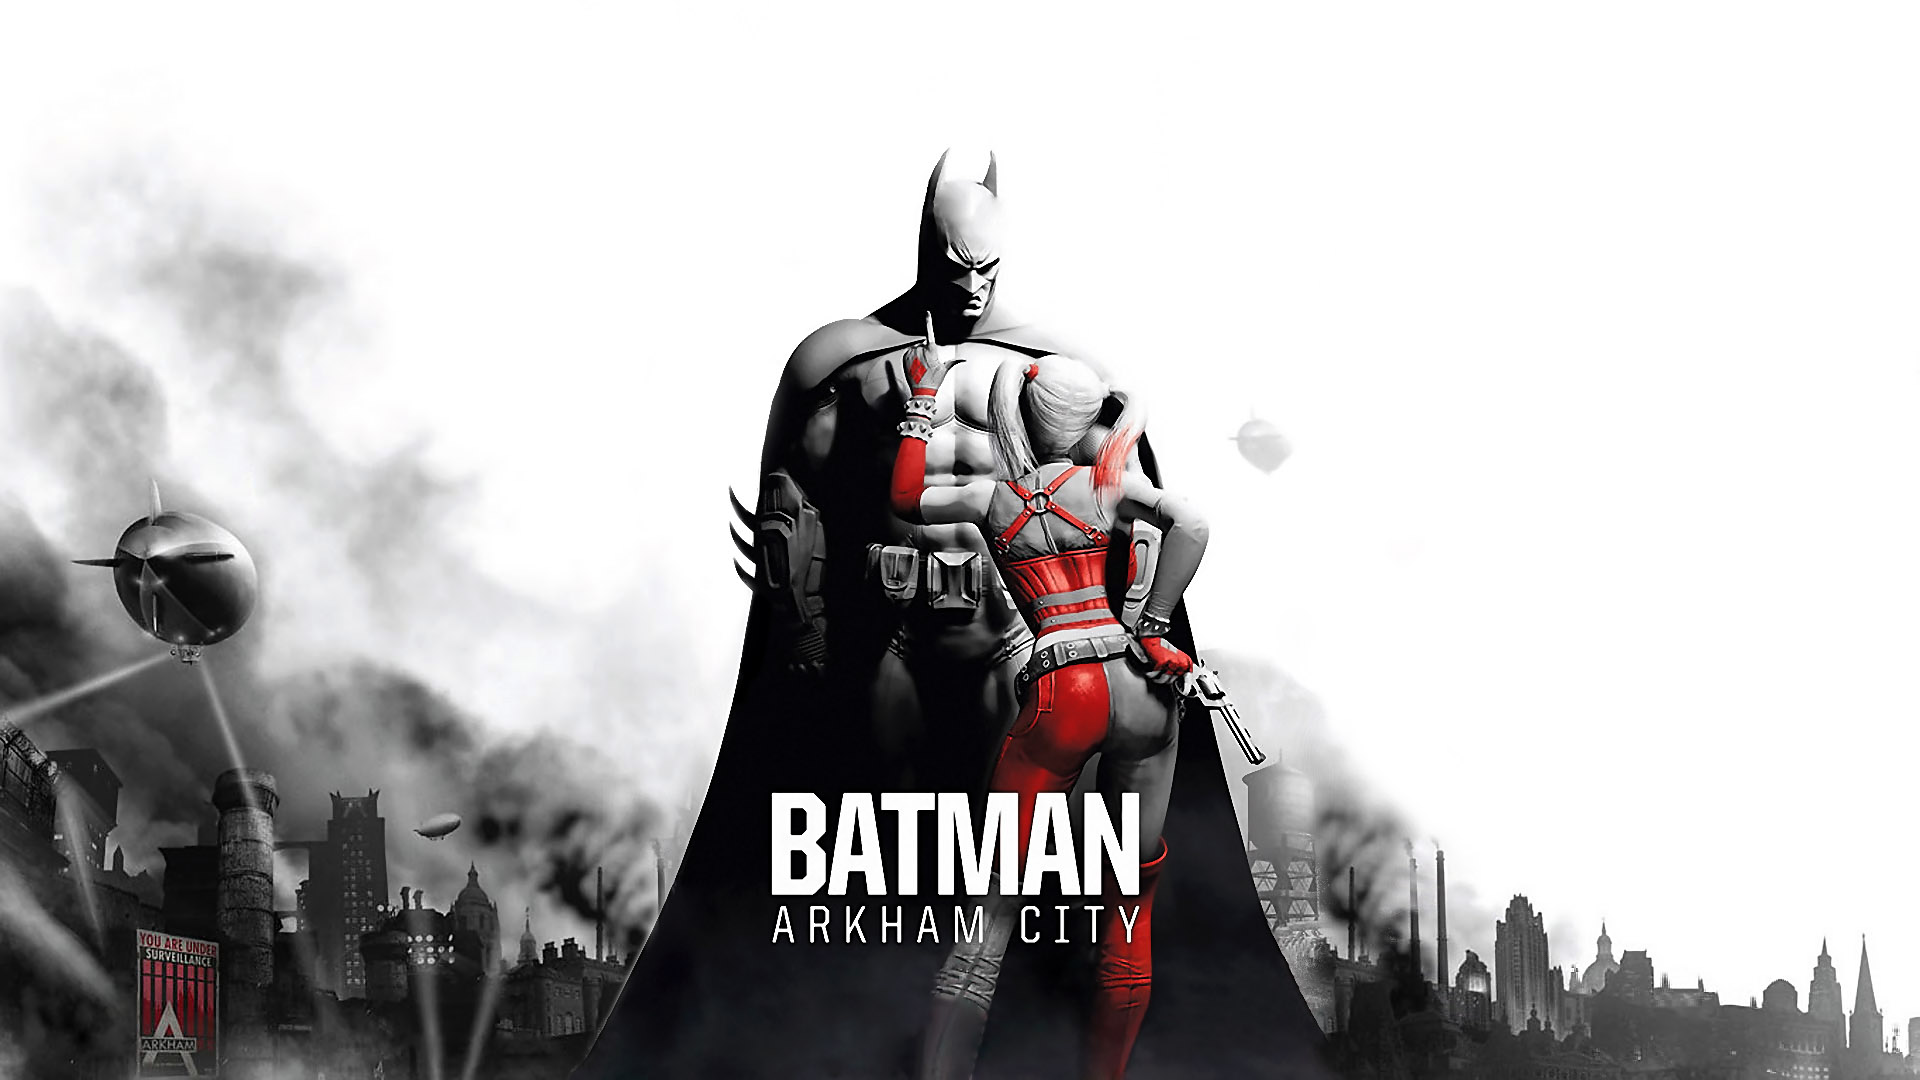 Batman Arkham City Playstation Meristation